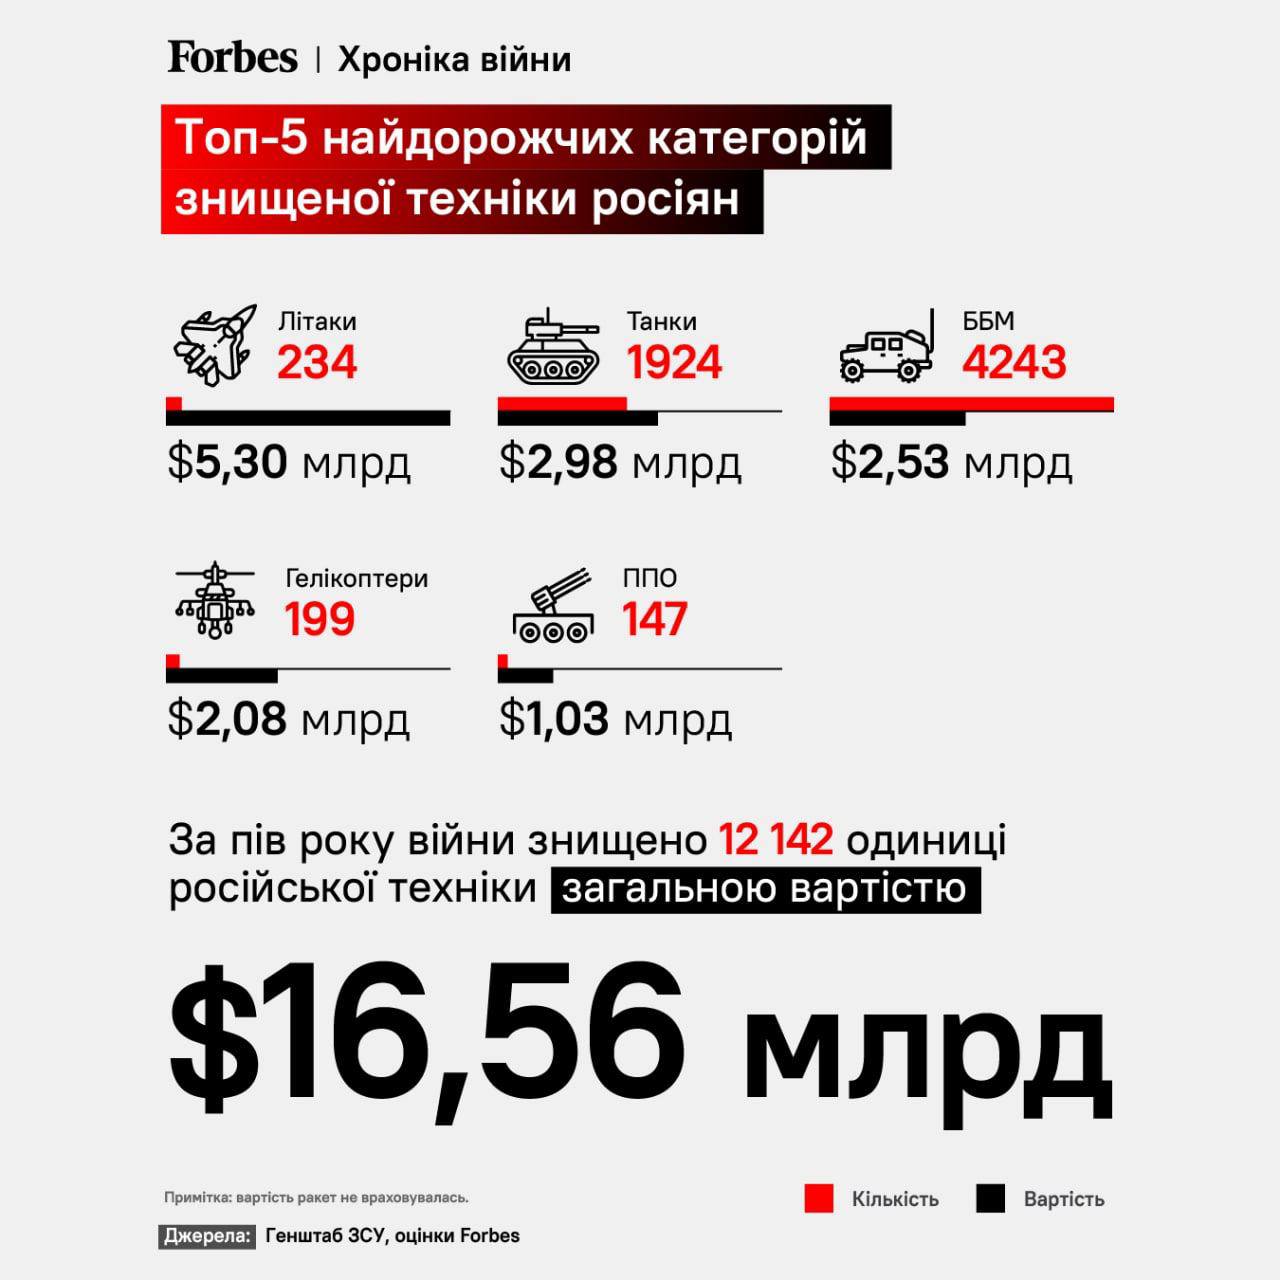 За полгода полномасштабной войны против Украины Россия потеряла 12 142 единицы техники стоимостью $16,56 млрд (без учёта ракет), - Forbes